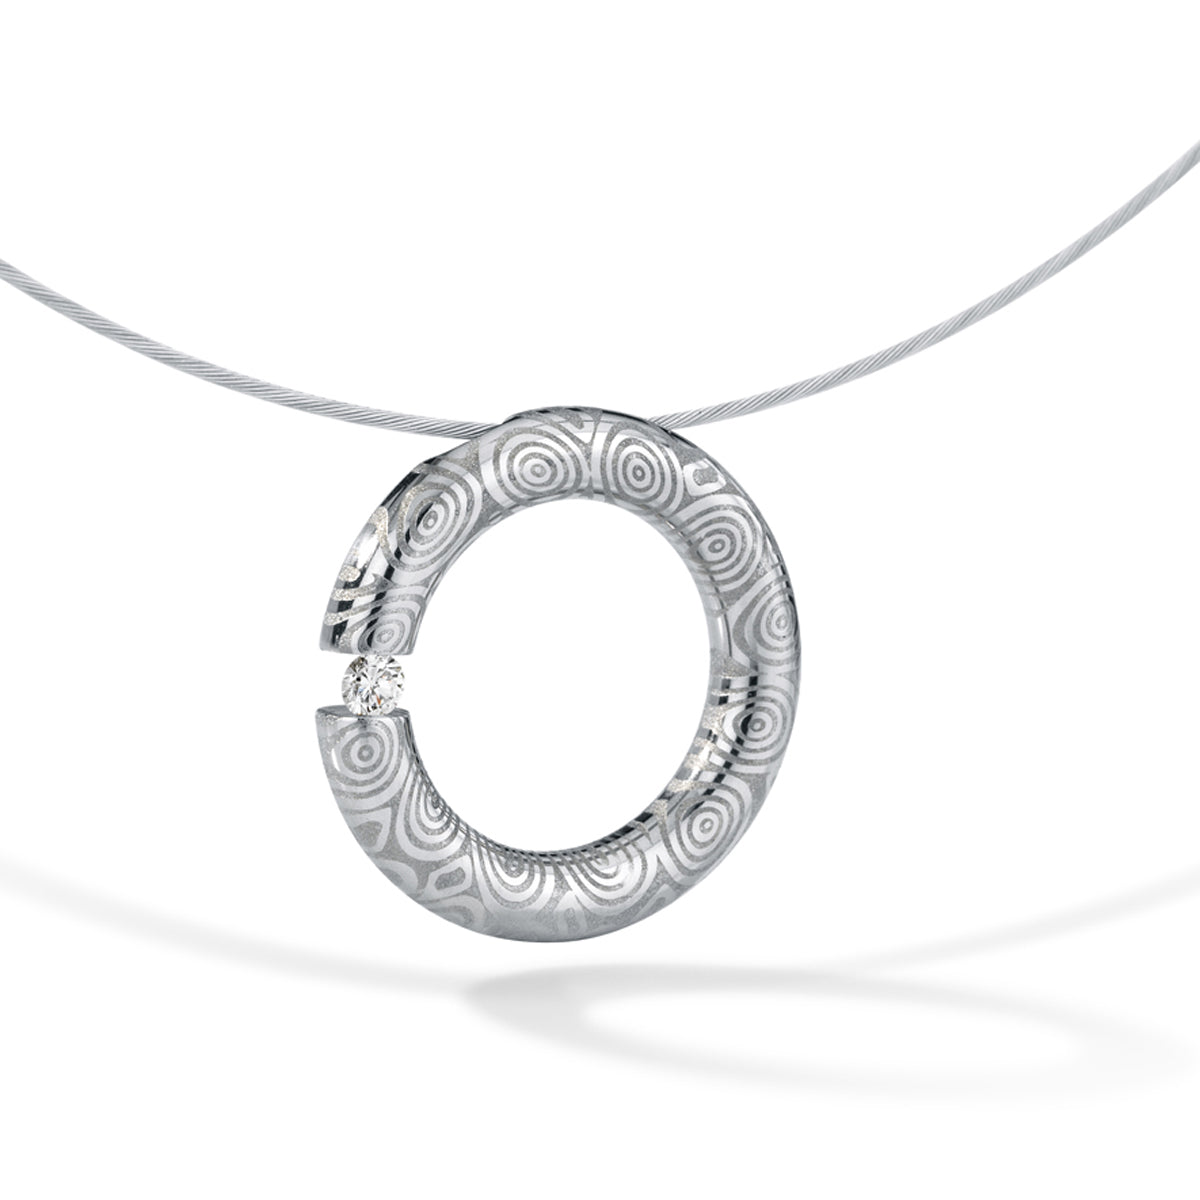 Diamantanhänger mit Brillant 0,06 oder 0,10 ct., TW VS, RUND 20 mm, Edelstahl oder Damaszenerstahl